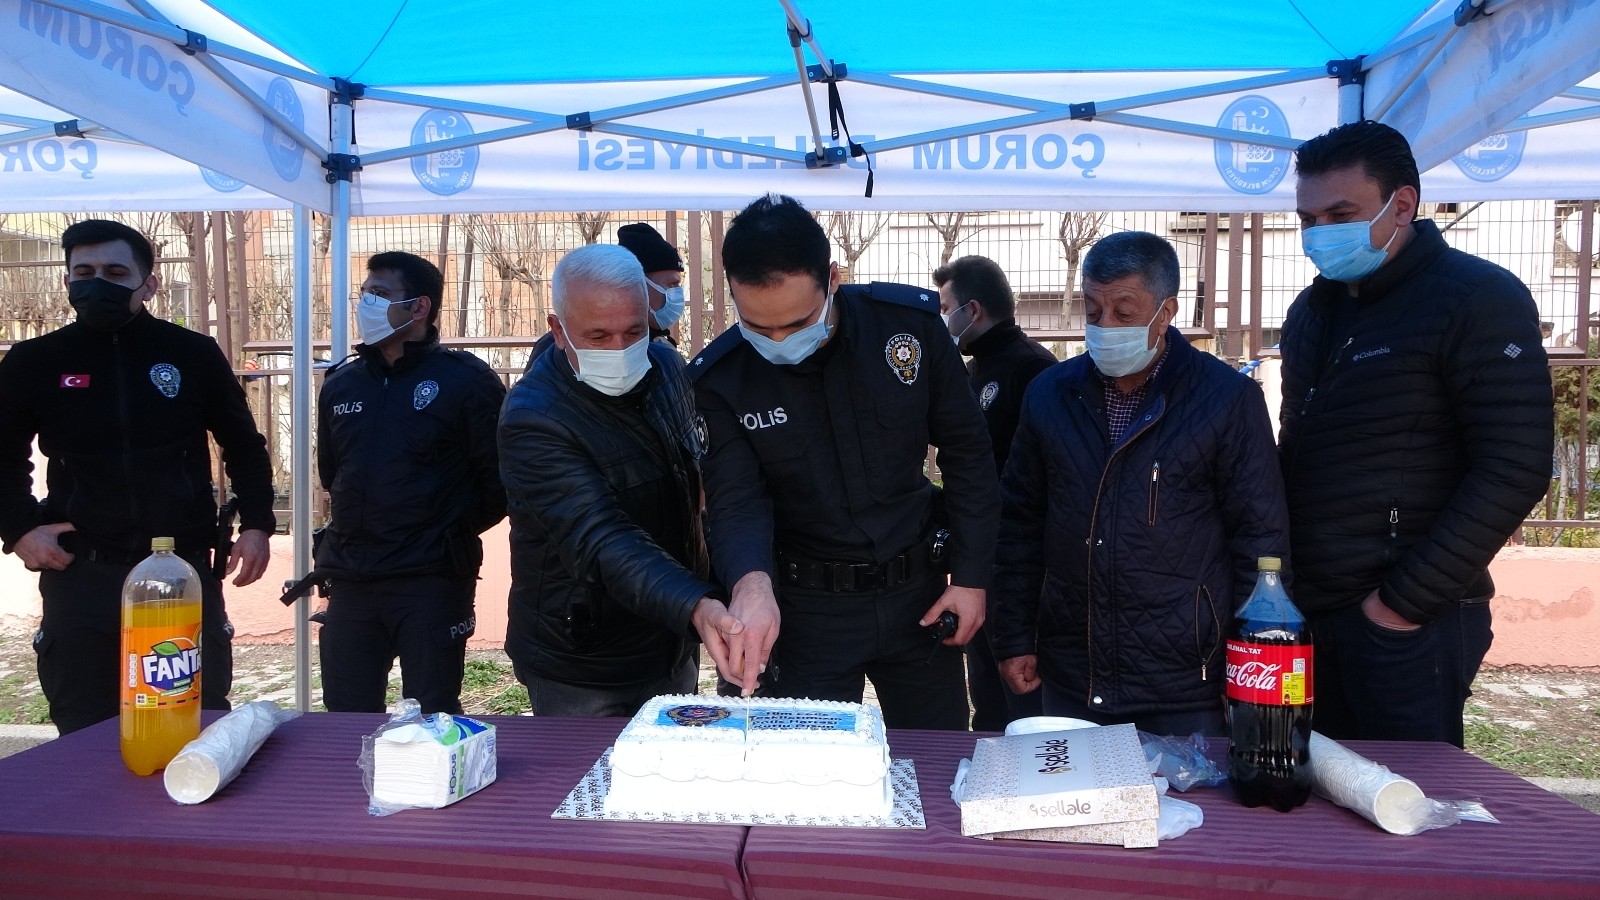 Kavga ihbarına gelen polise pasta sürprizi
